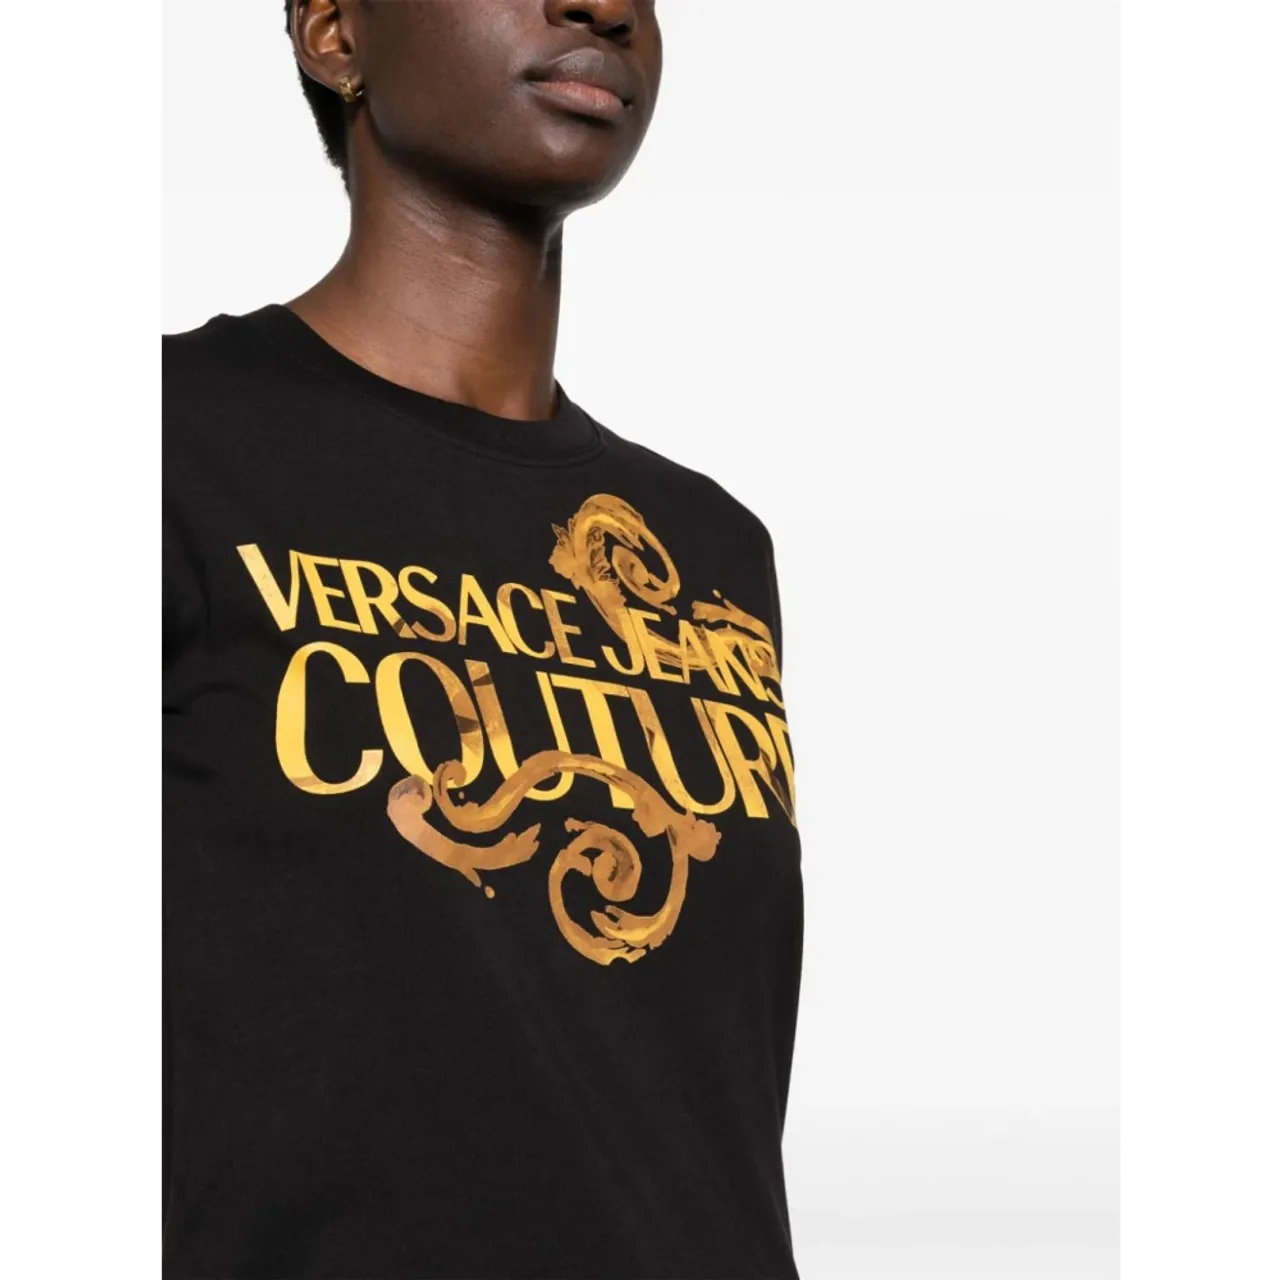 Schwarze T-Shirts Polos für Frauen Versace Jeans Couture